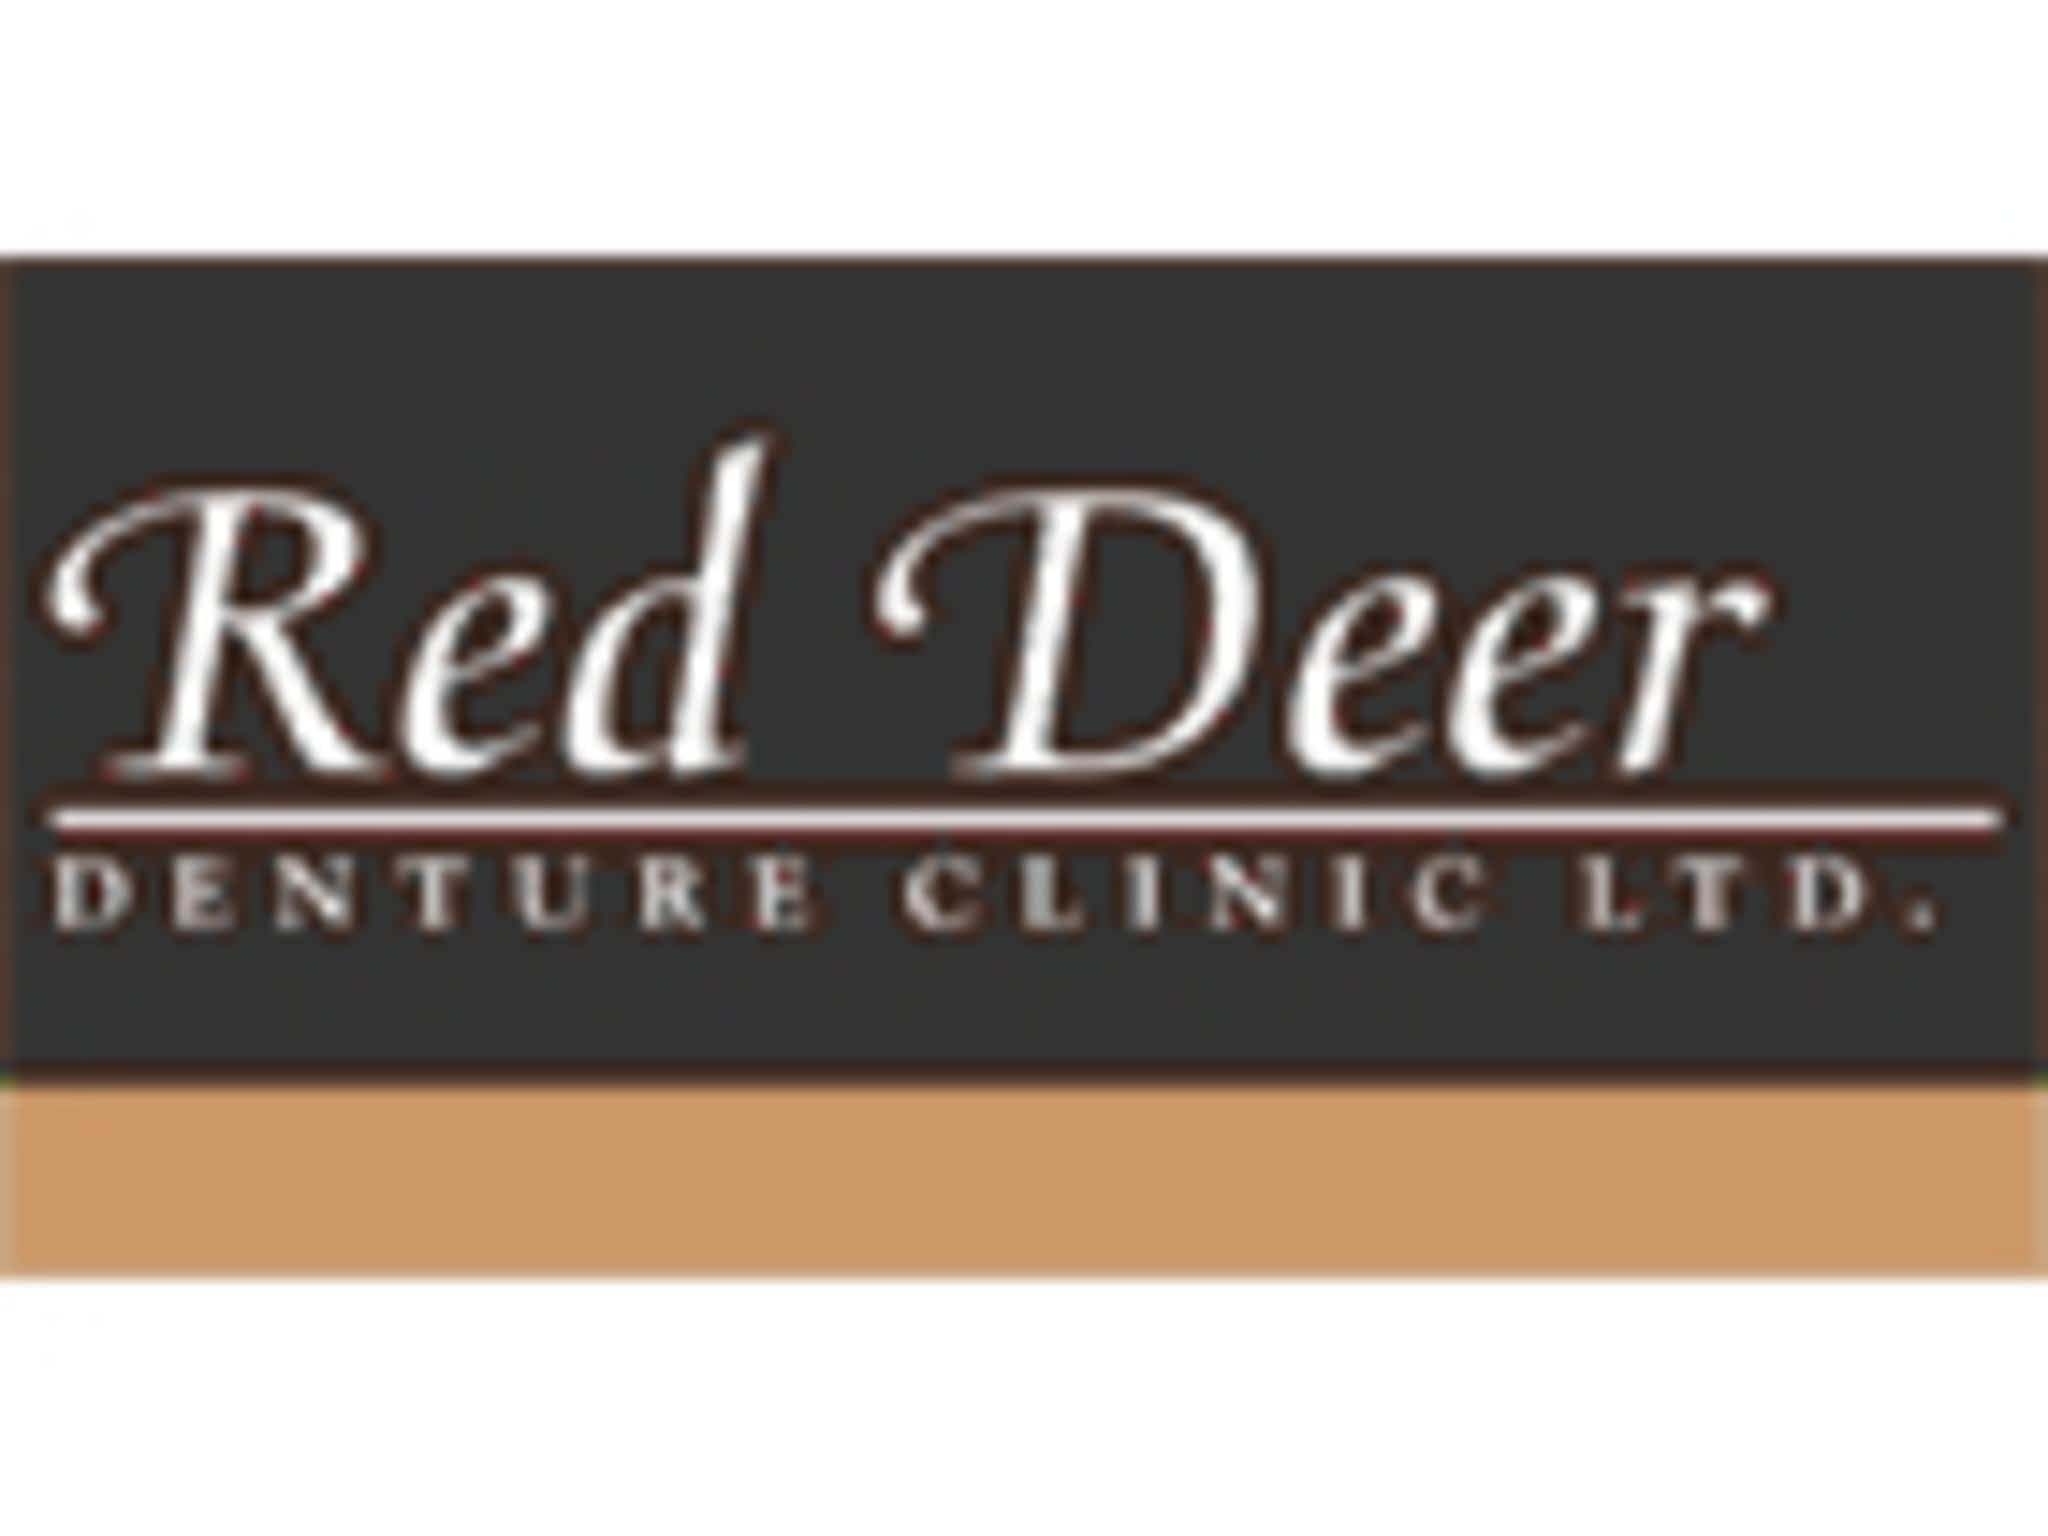 photo Red Deer Denture Clinic Ltd